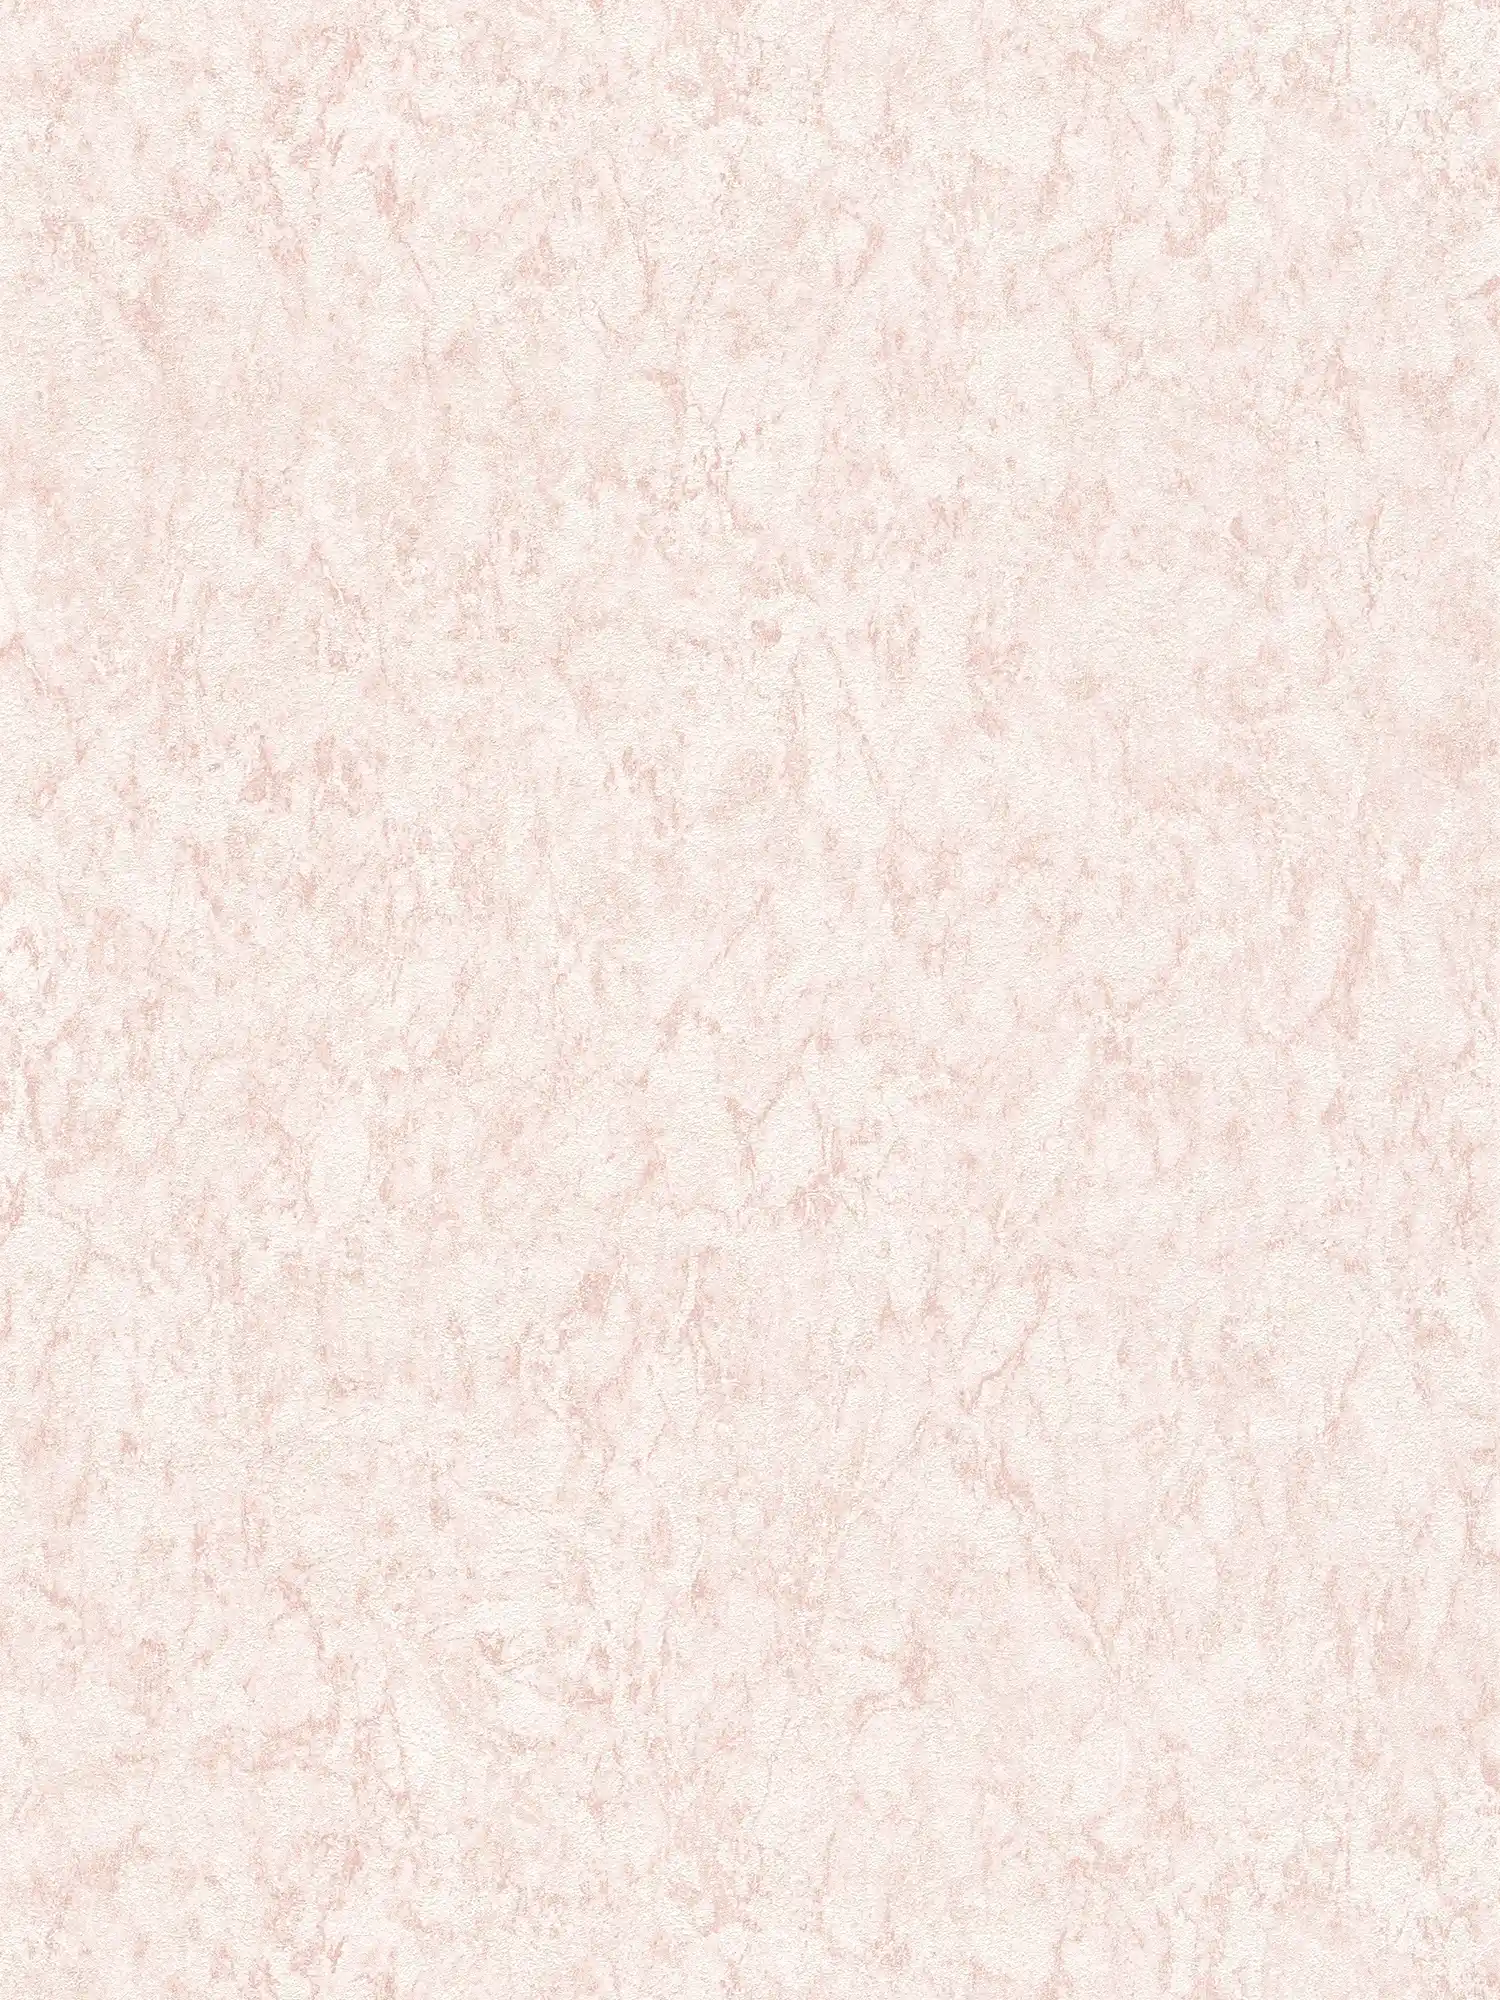 Carta da parati tinta unicat con effetto texture e disegno screziato - rosa, crema
